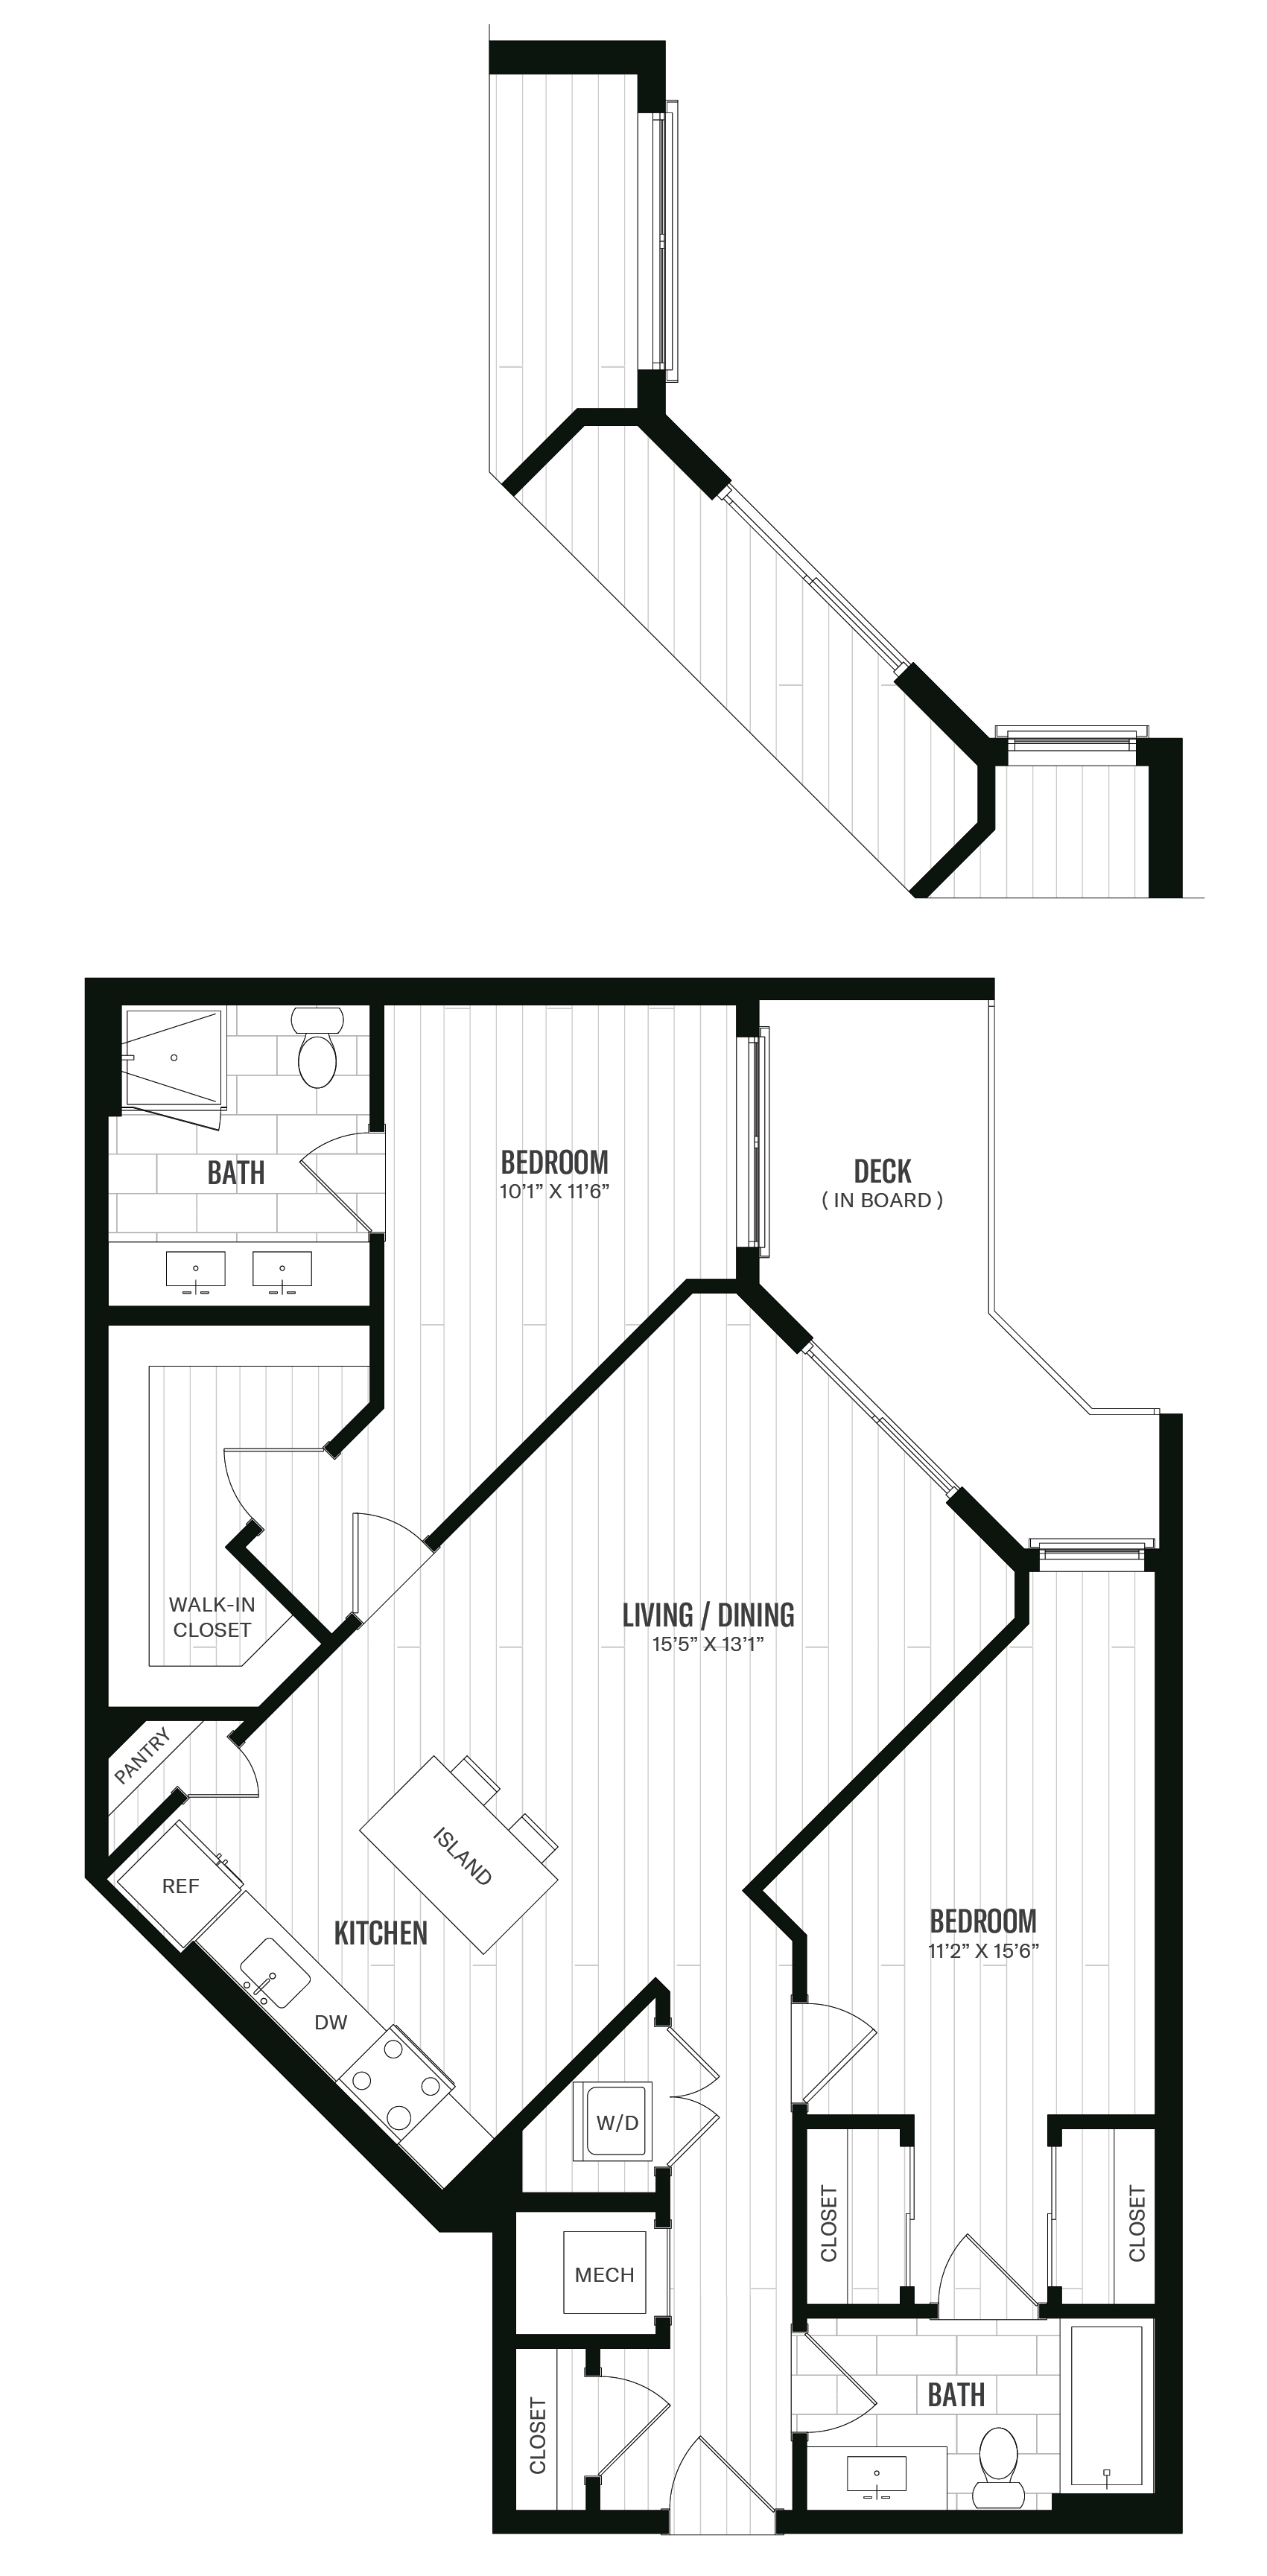 Floorplan image of unit 537